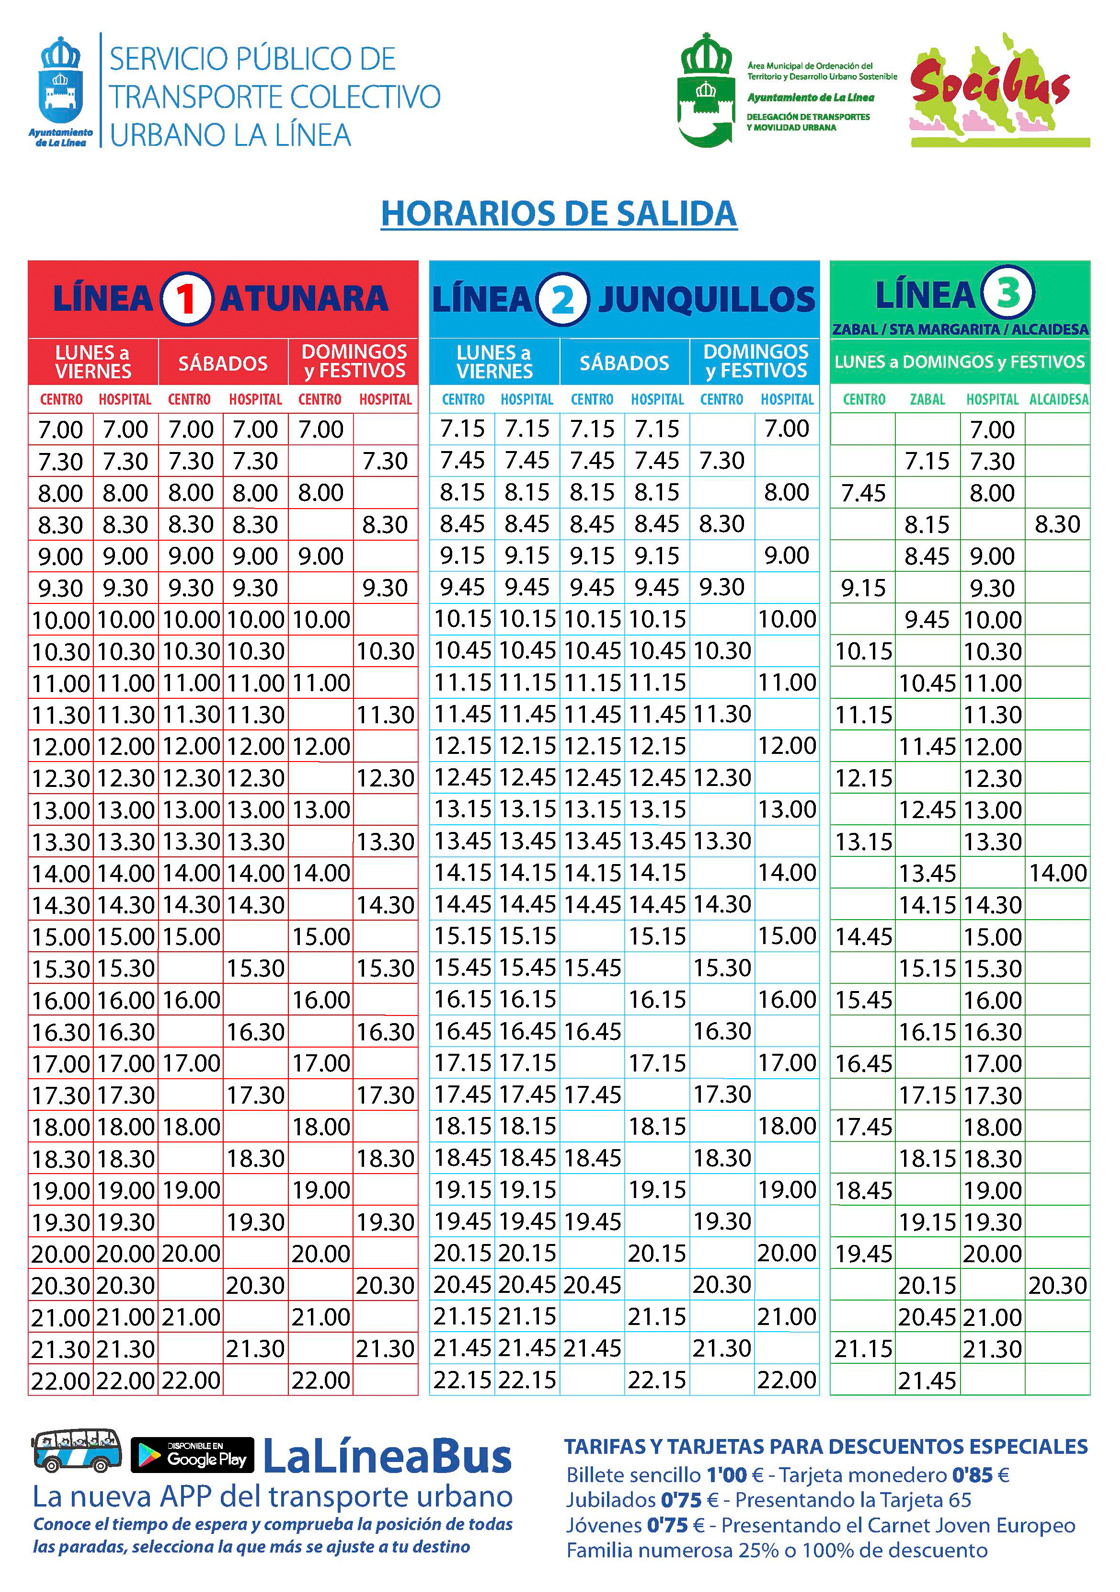 Groupe Socibus opère les autobus urbains de La Línea